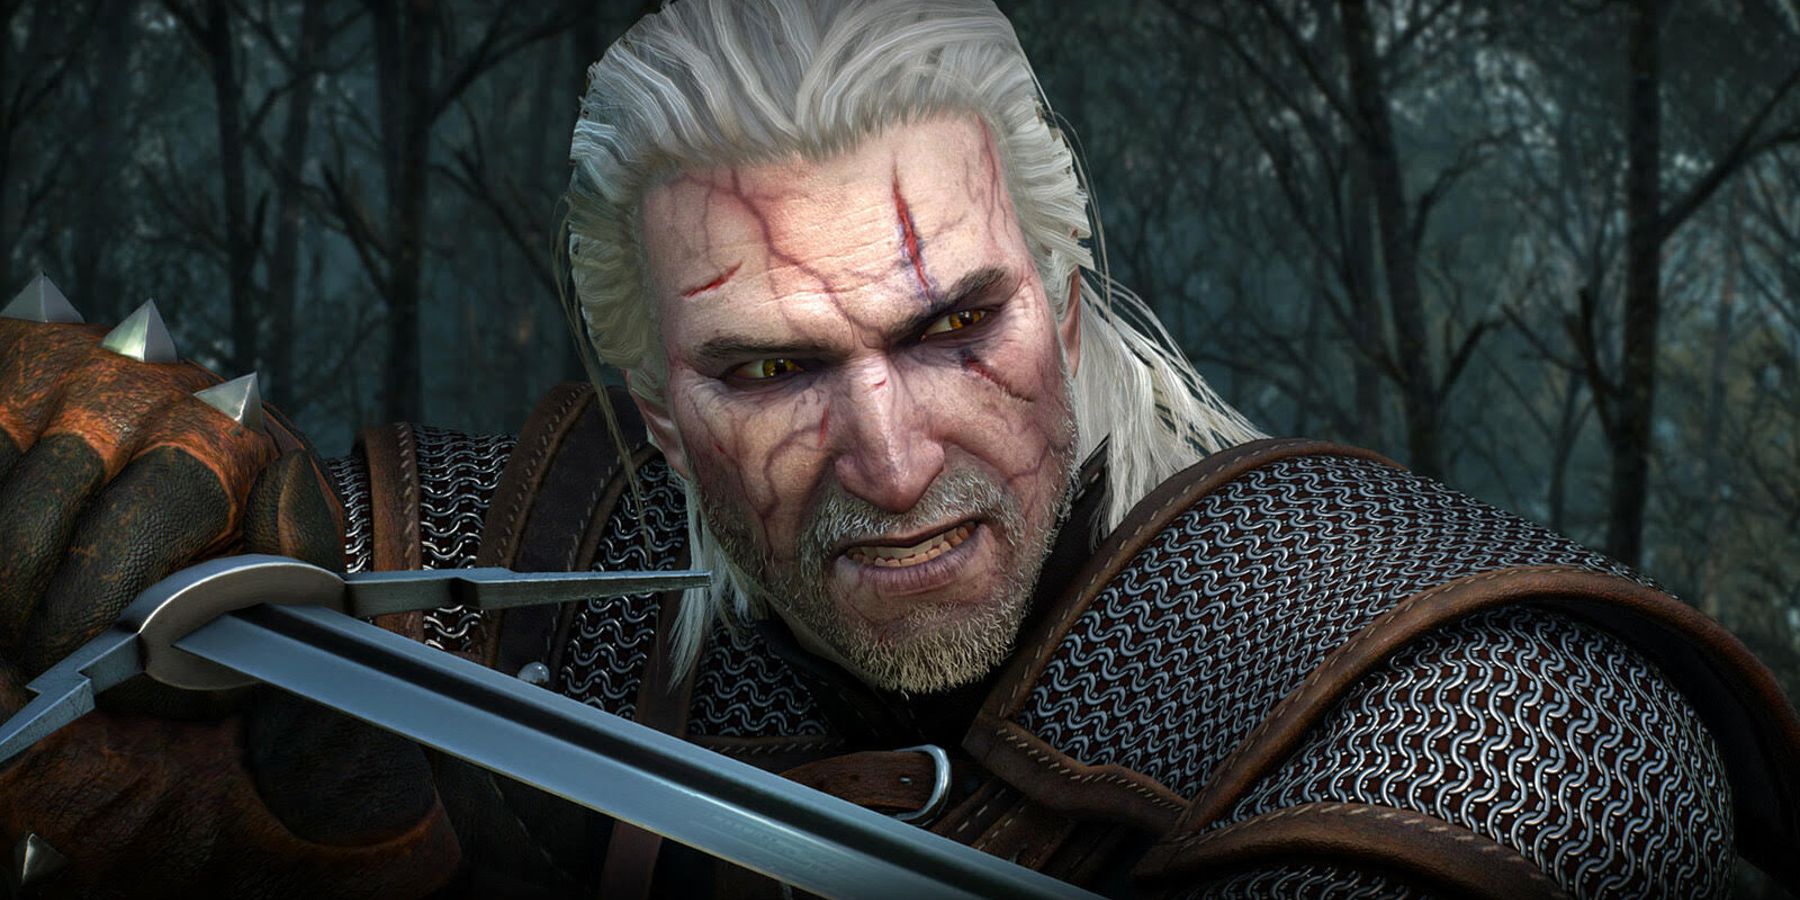 Geralt braced for combat